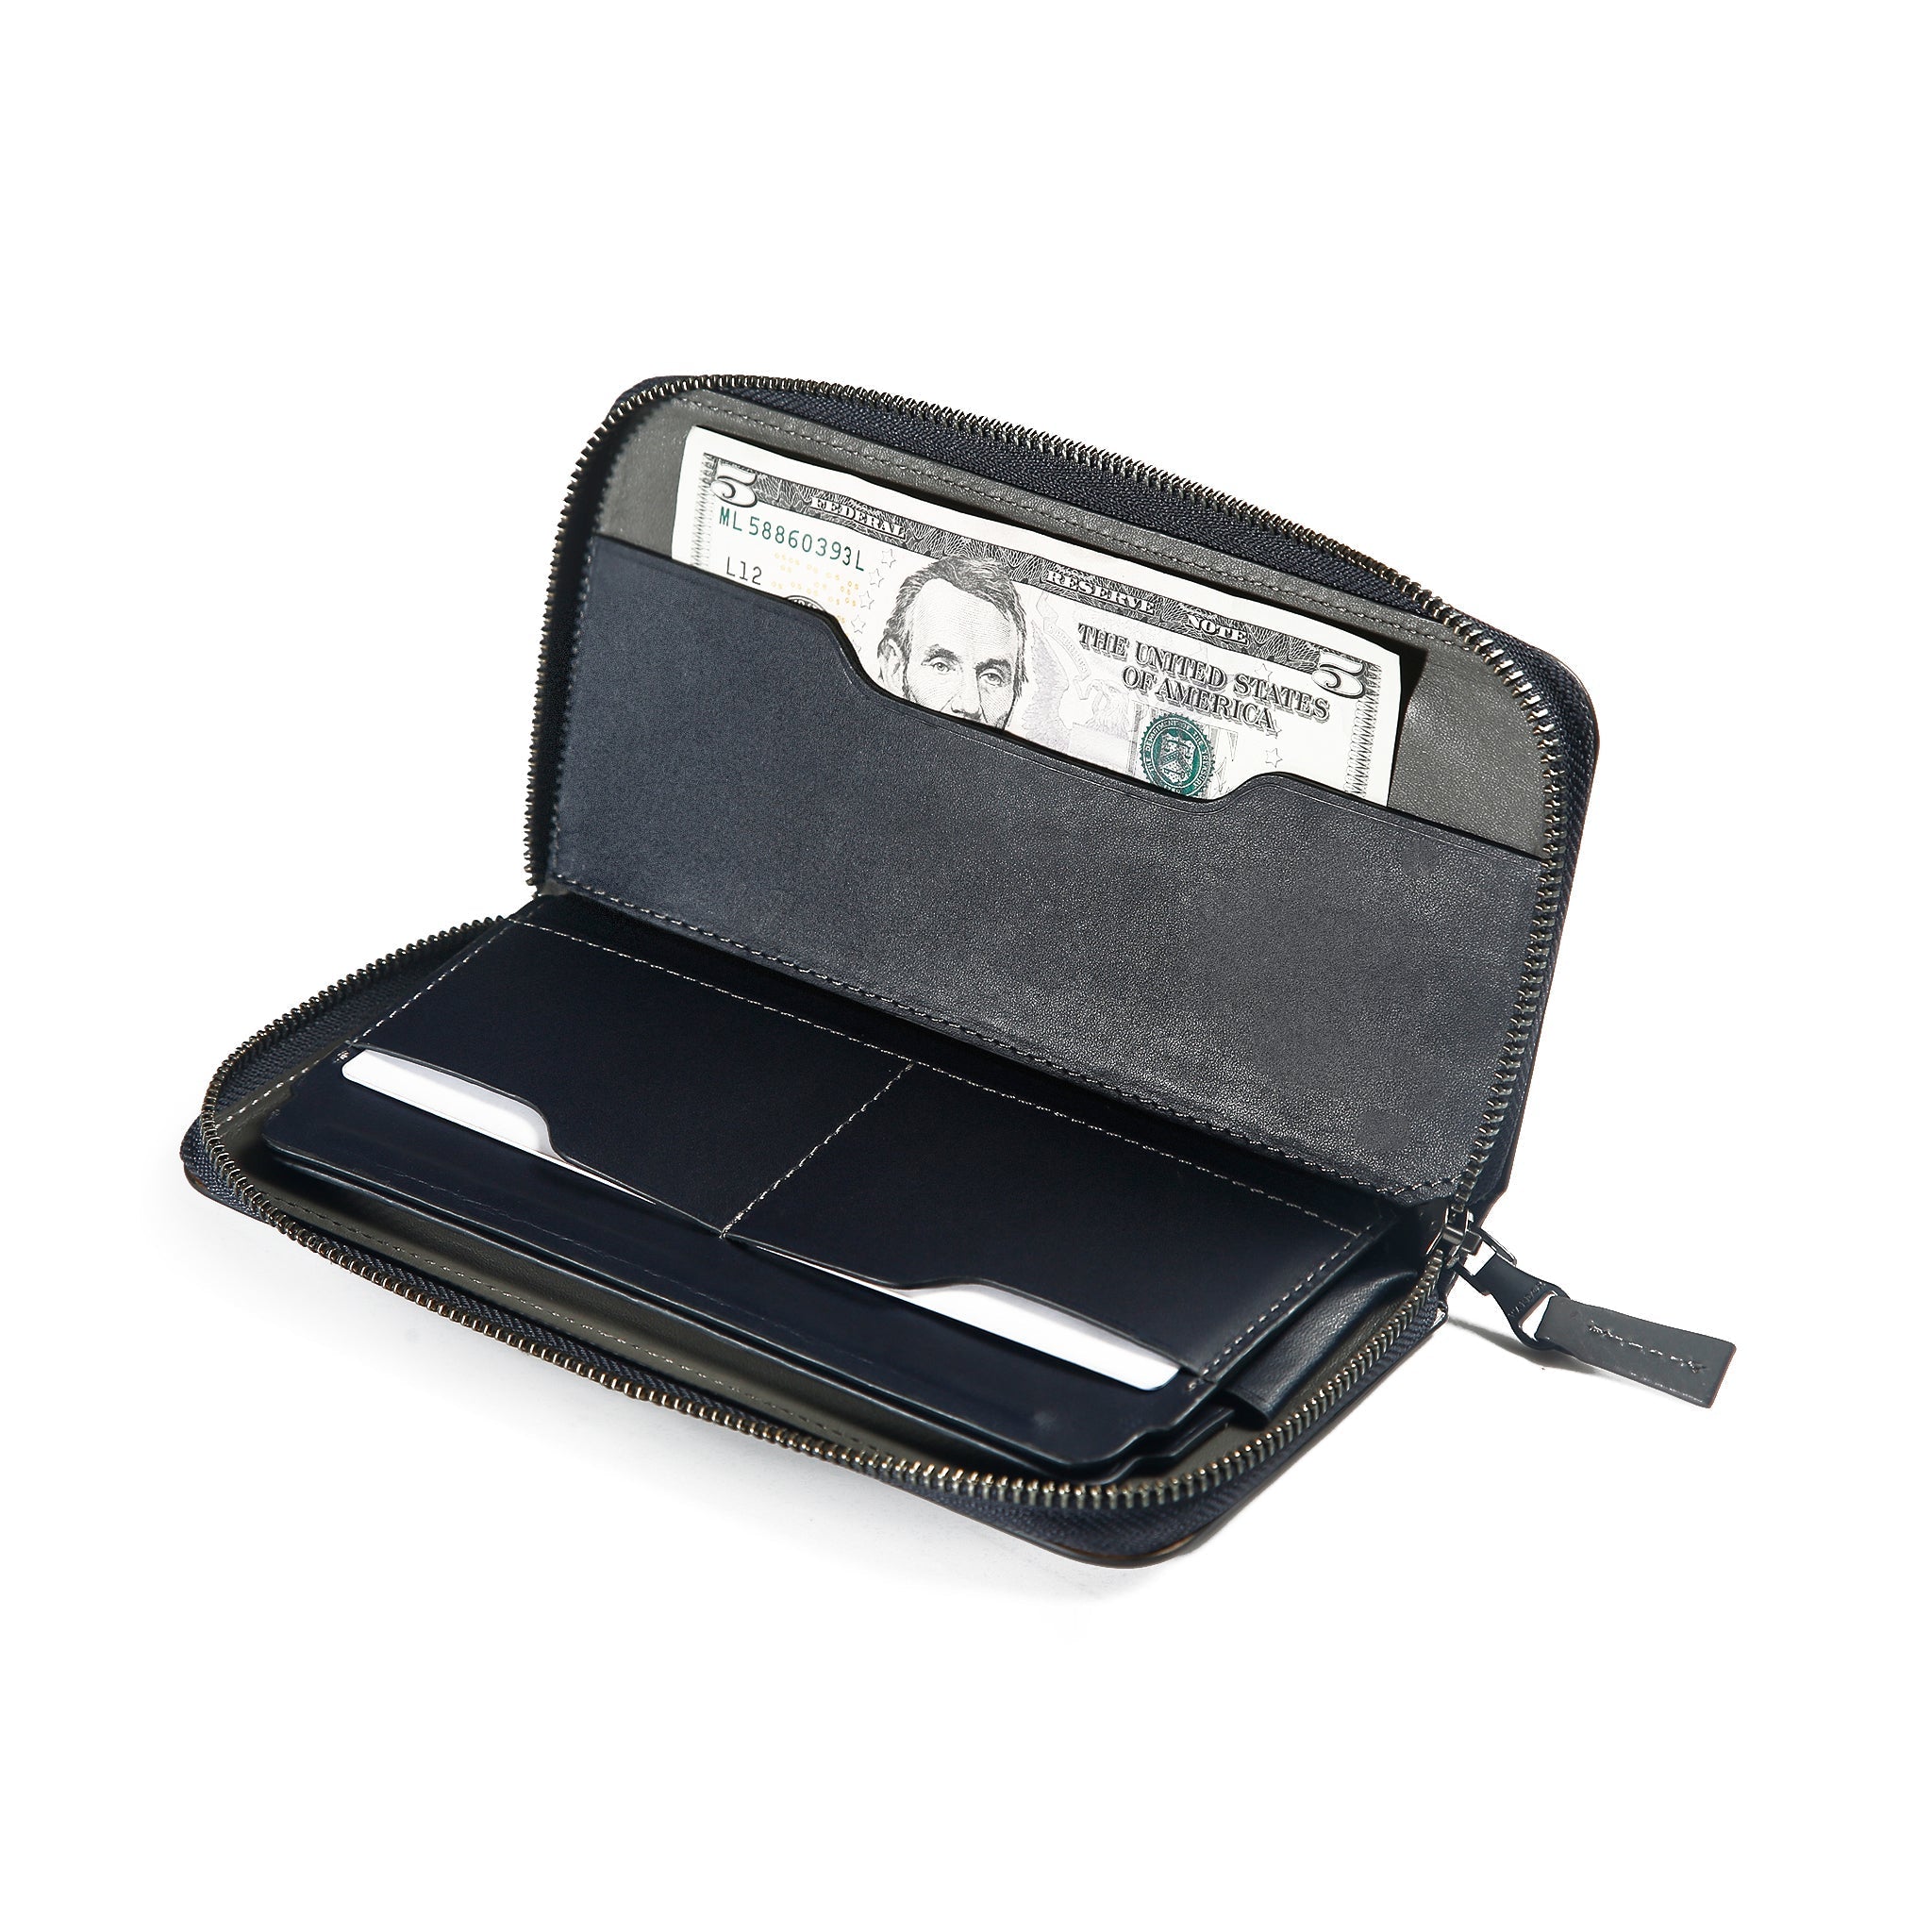 ZipFolio™ Phone Wallet